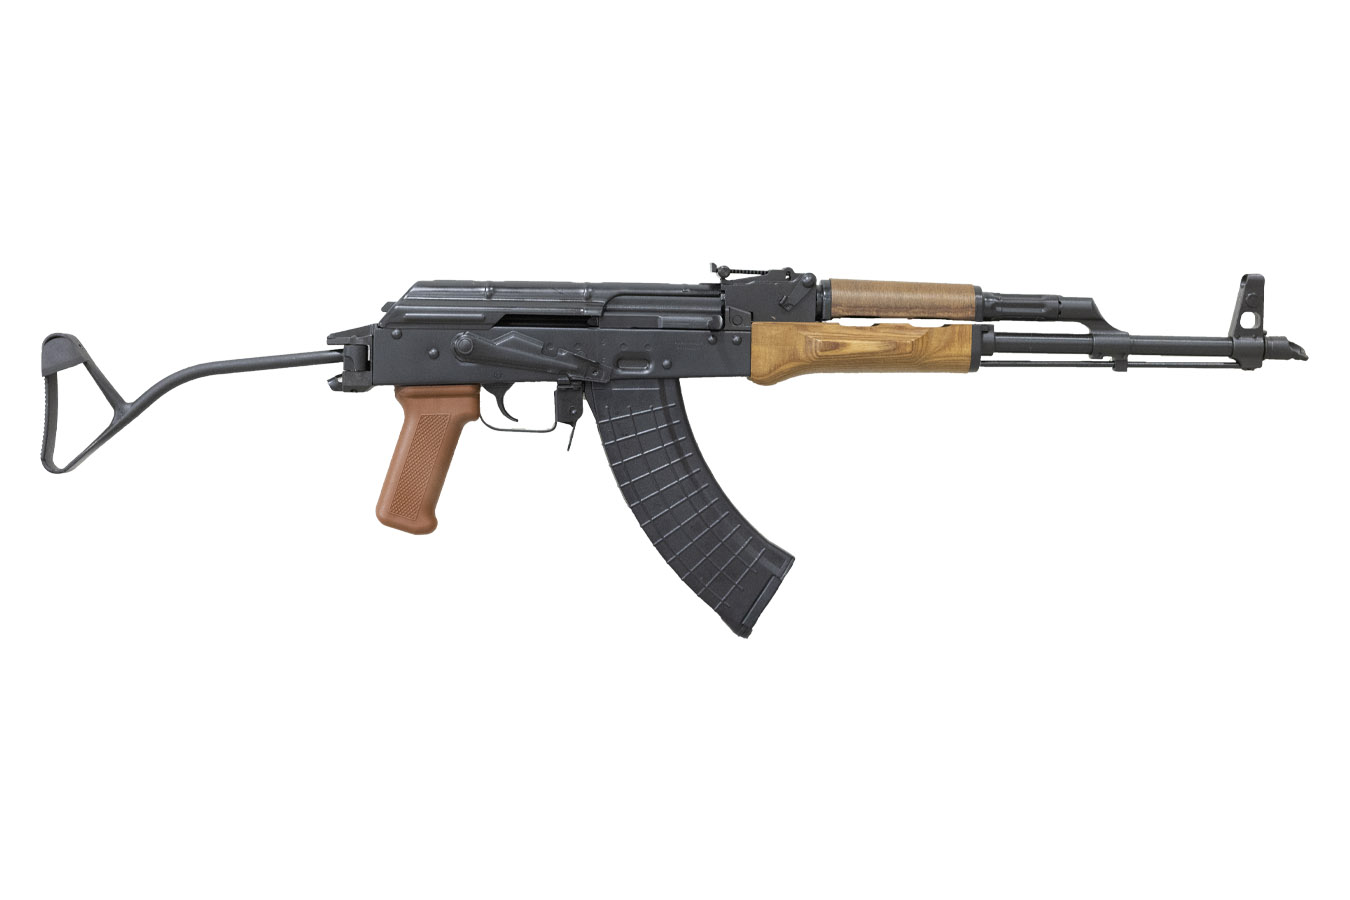 AK-47 7.62X39MM RIFLE, FOLDING STOCK